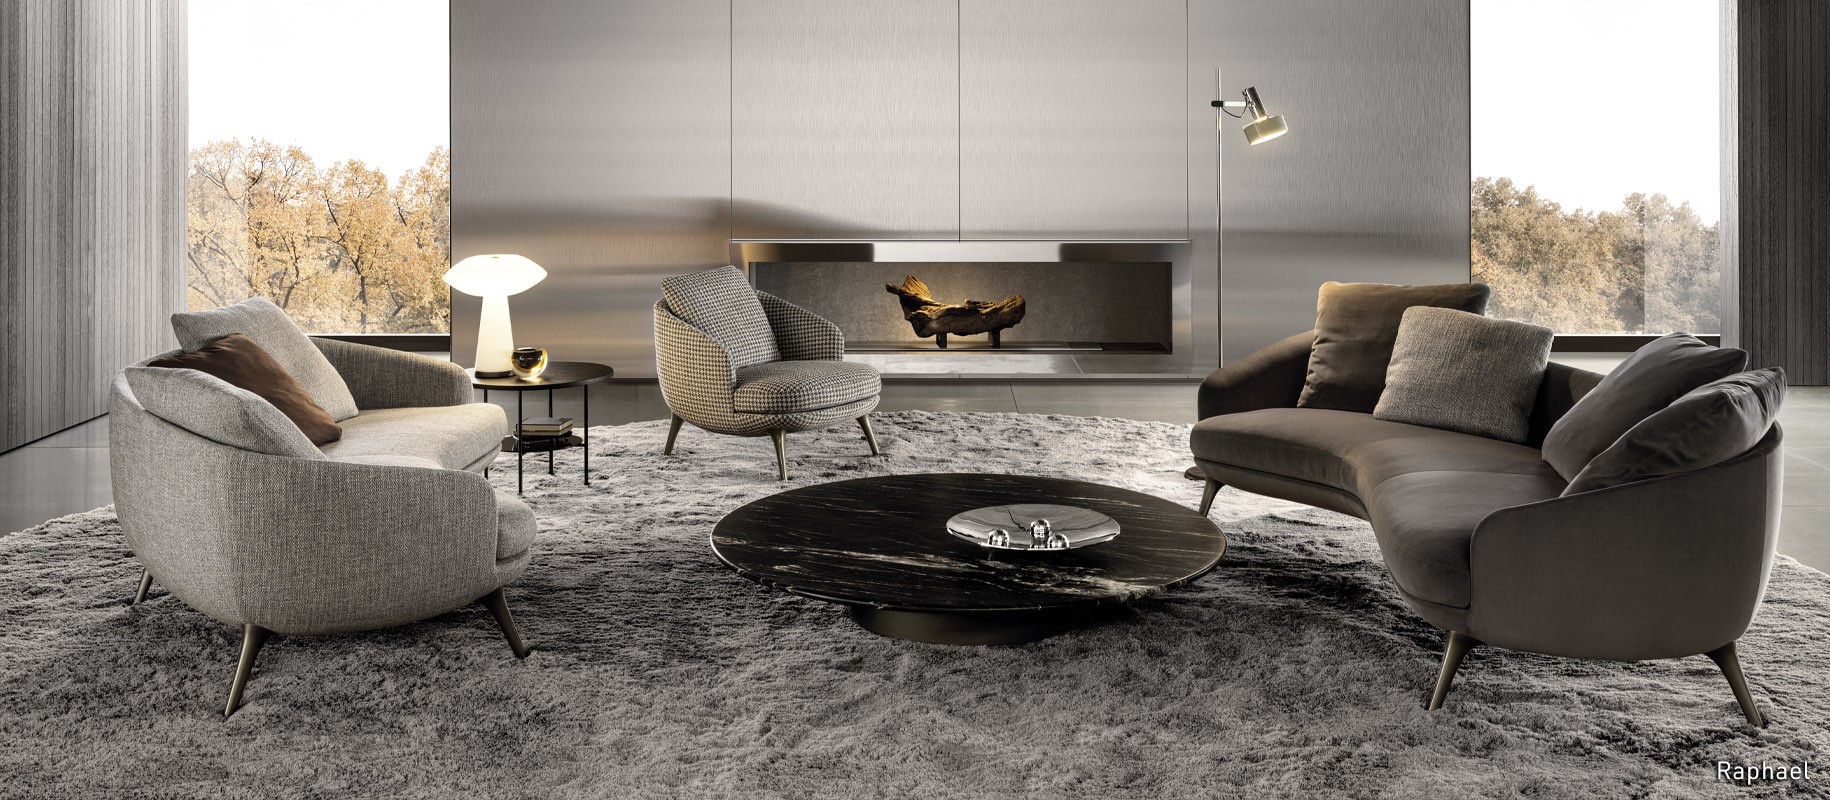 <p>Im Jahr 2023 entwirft das Duo Gamfratesi die Sitzmöbelfamilie <strong>Raphael</strong>: kompakte Möbel mit exklusiver Schneiderkunst, die zu Protagonisten des Raums werden und eine neue Art des Wohnens zum Ausdruck bringen.</p>
